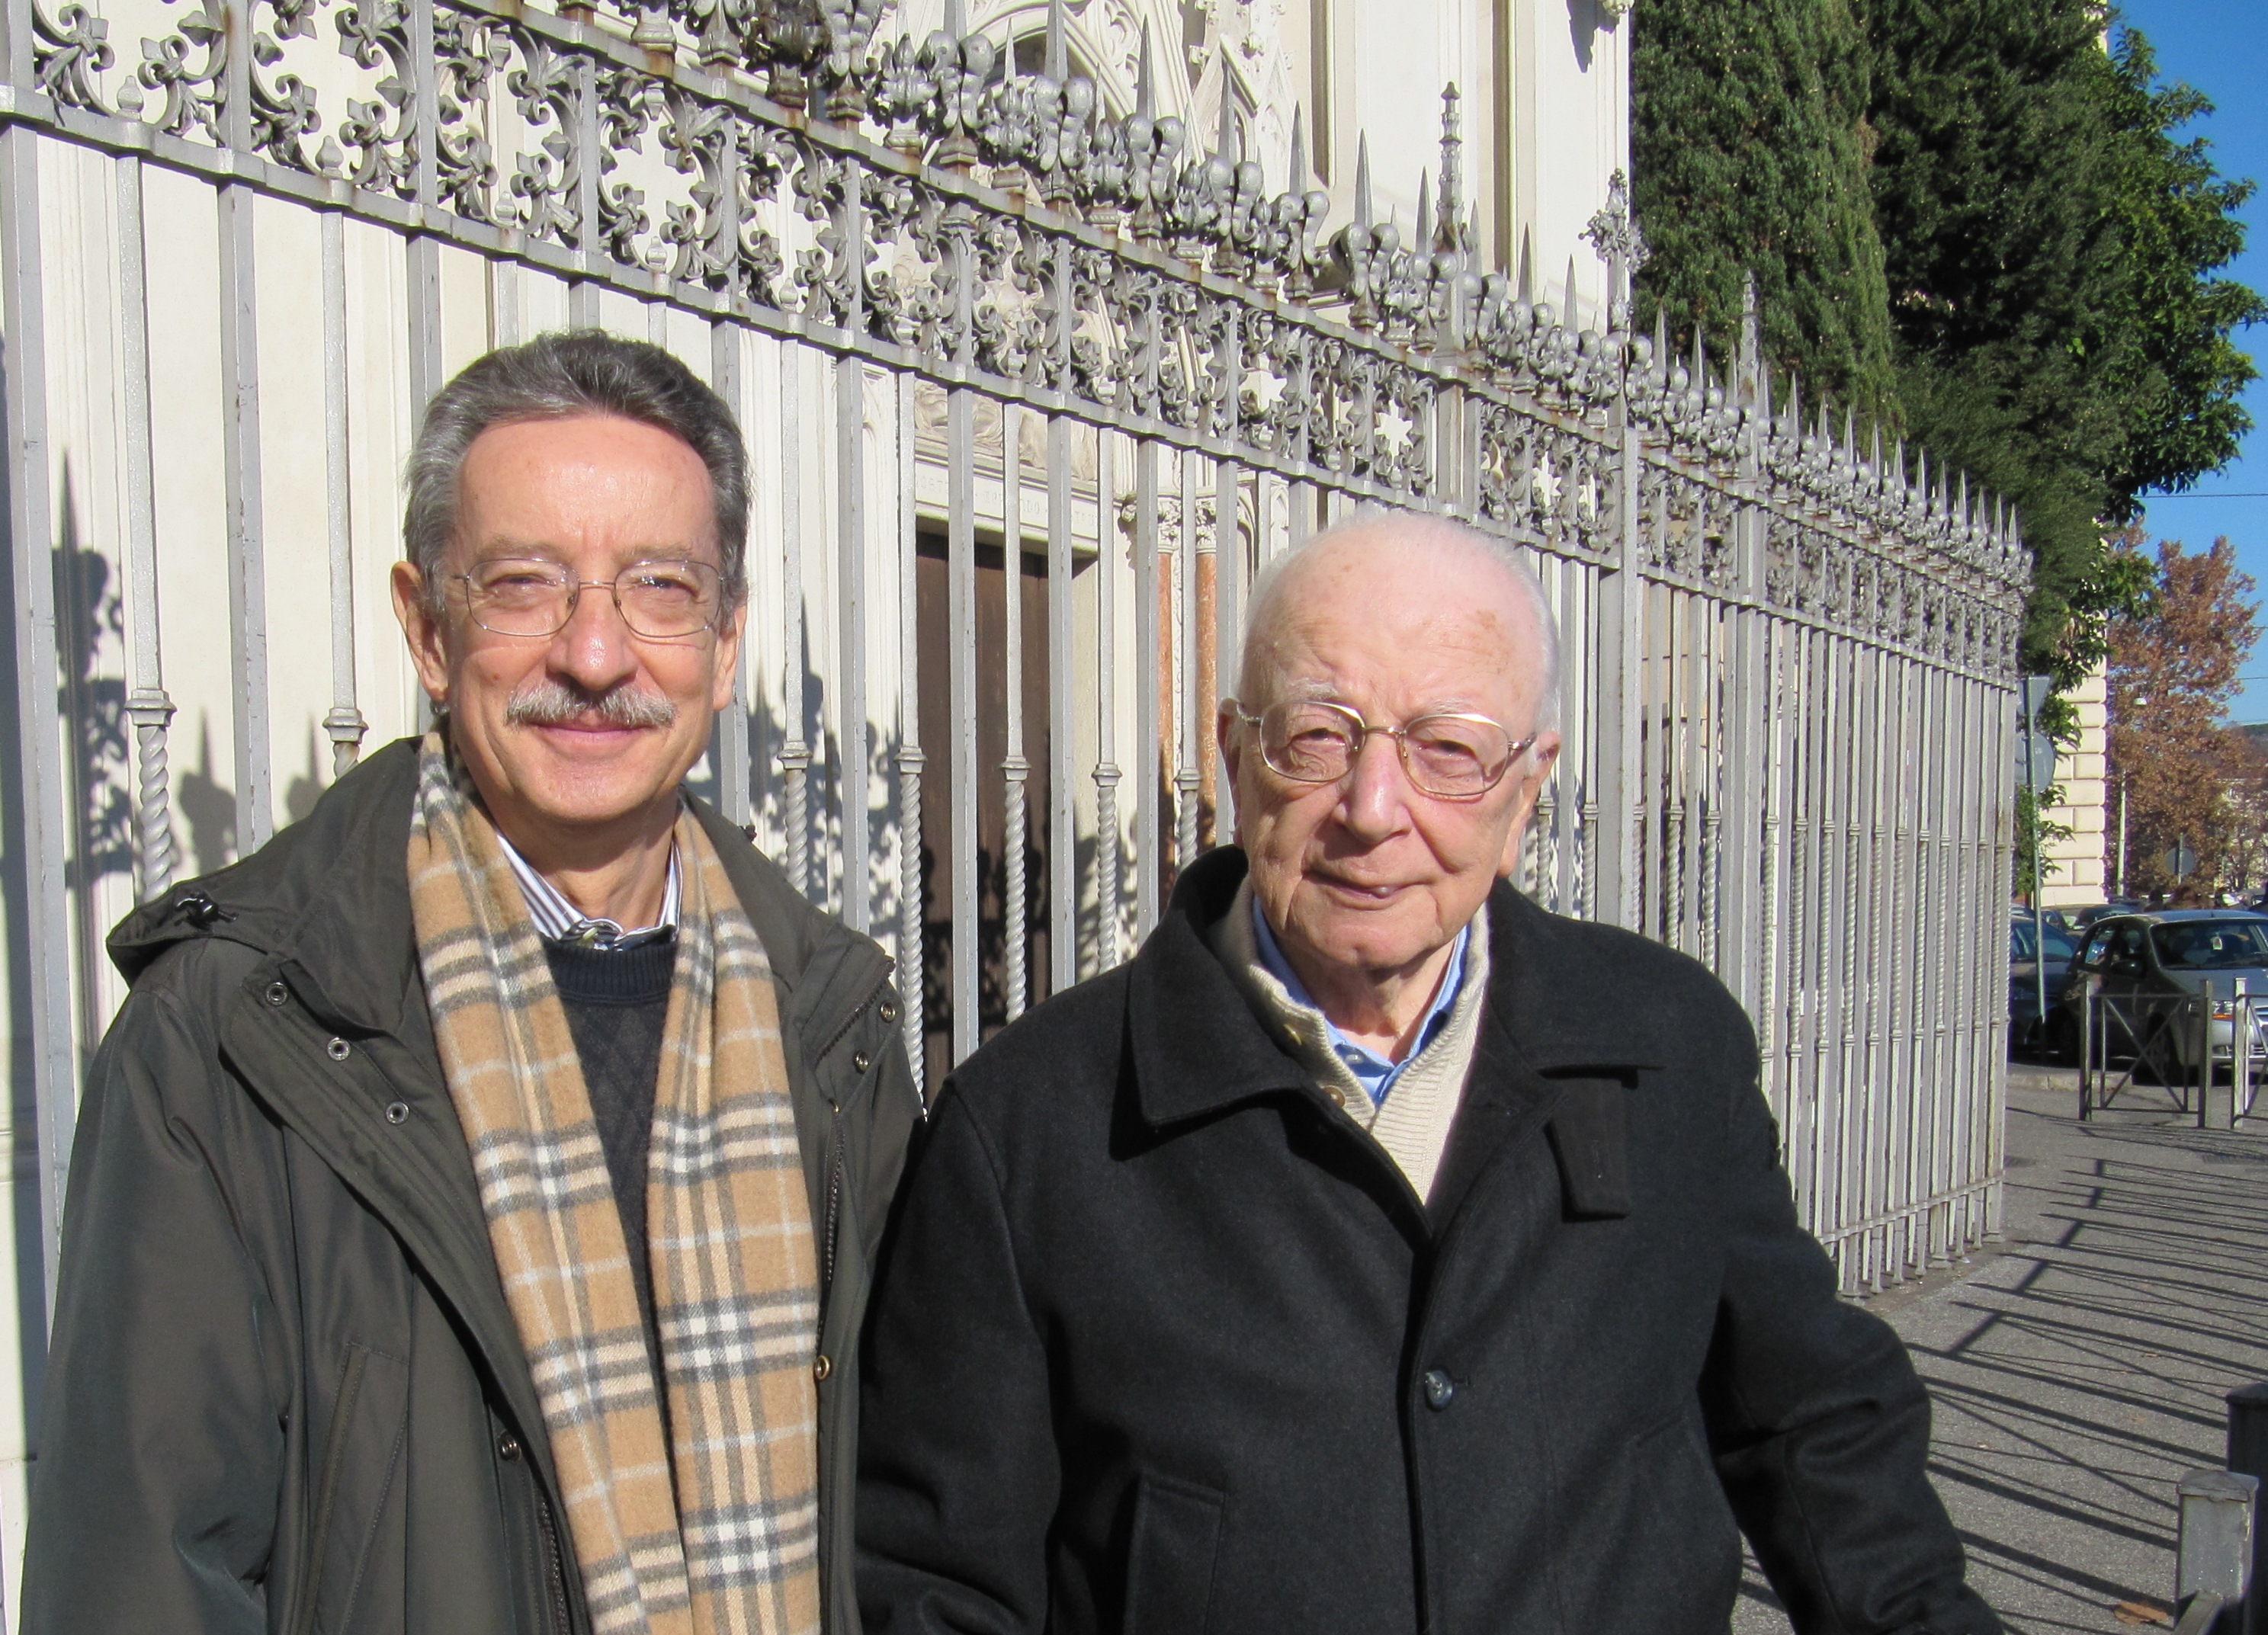 Wlodzimierz Redzioch e Renato Buzzonetti (Foto WR)